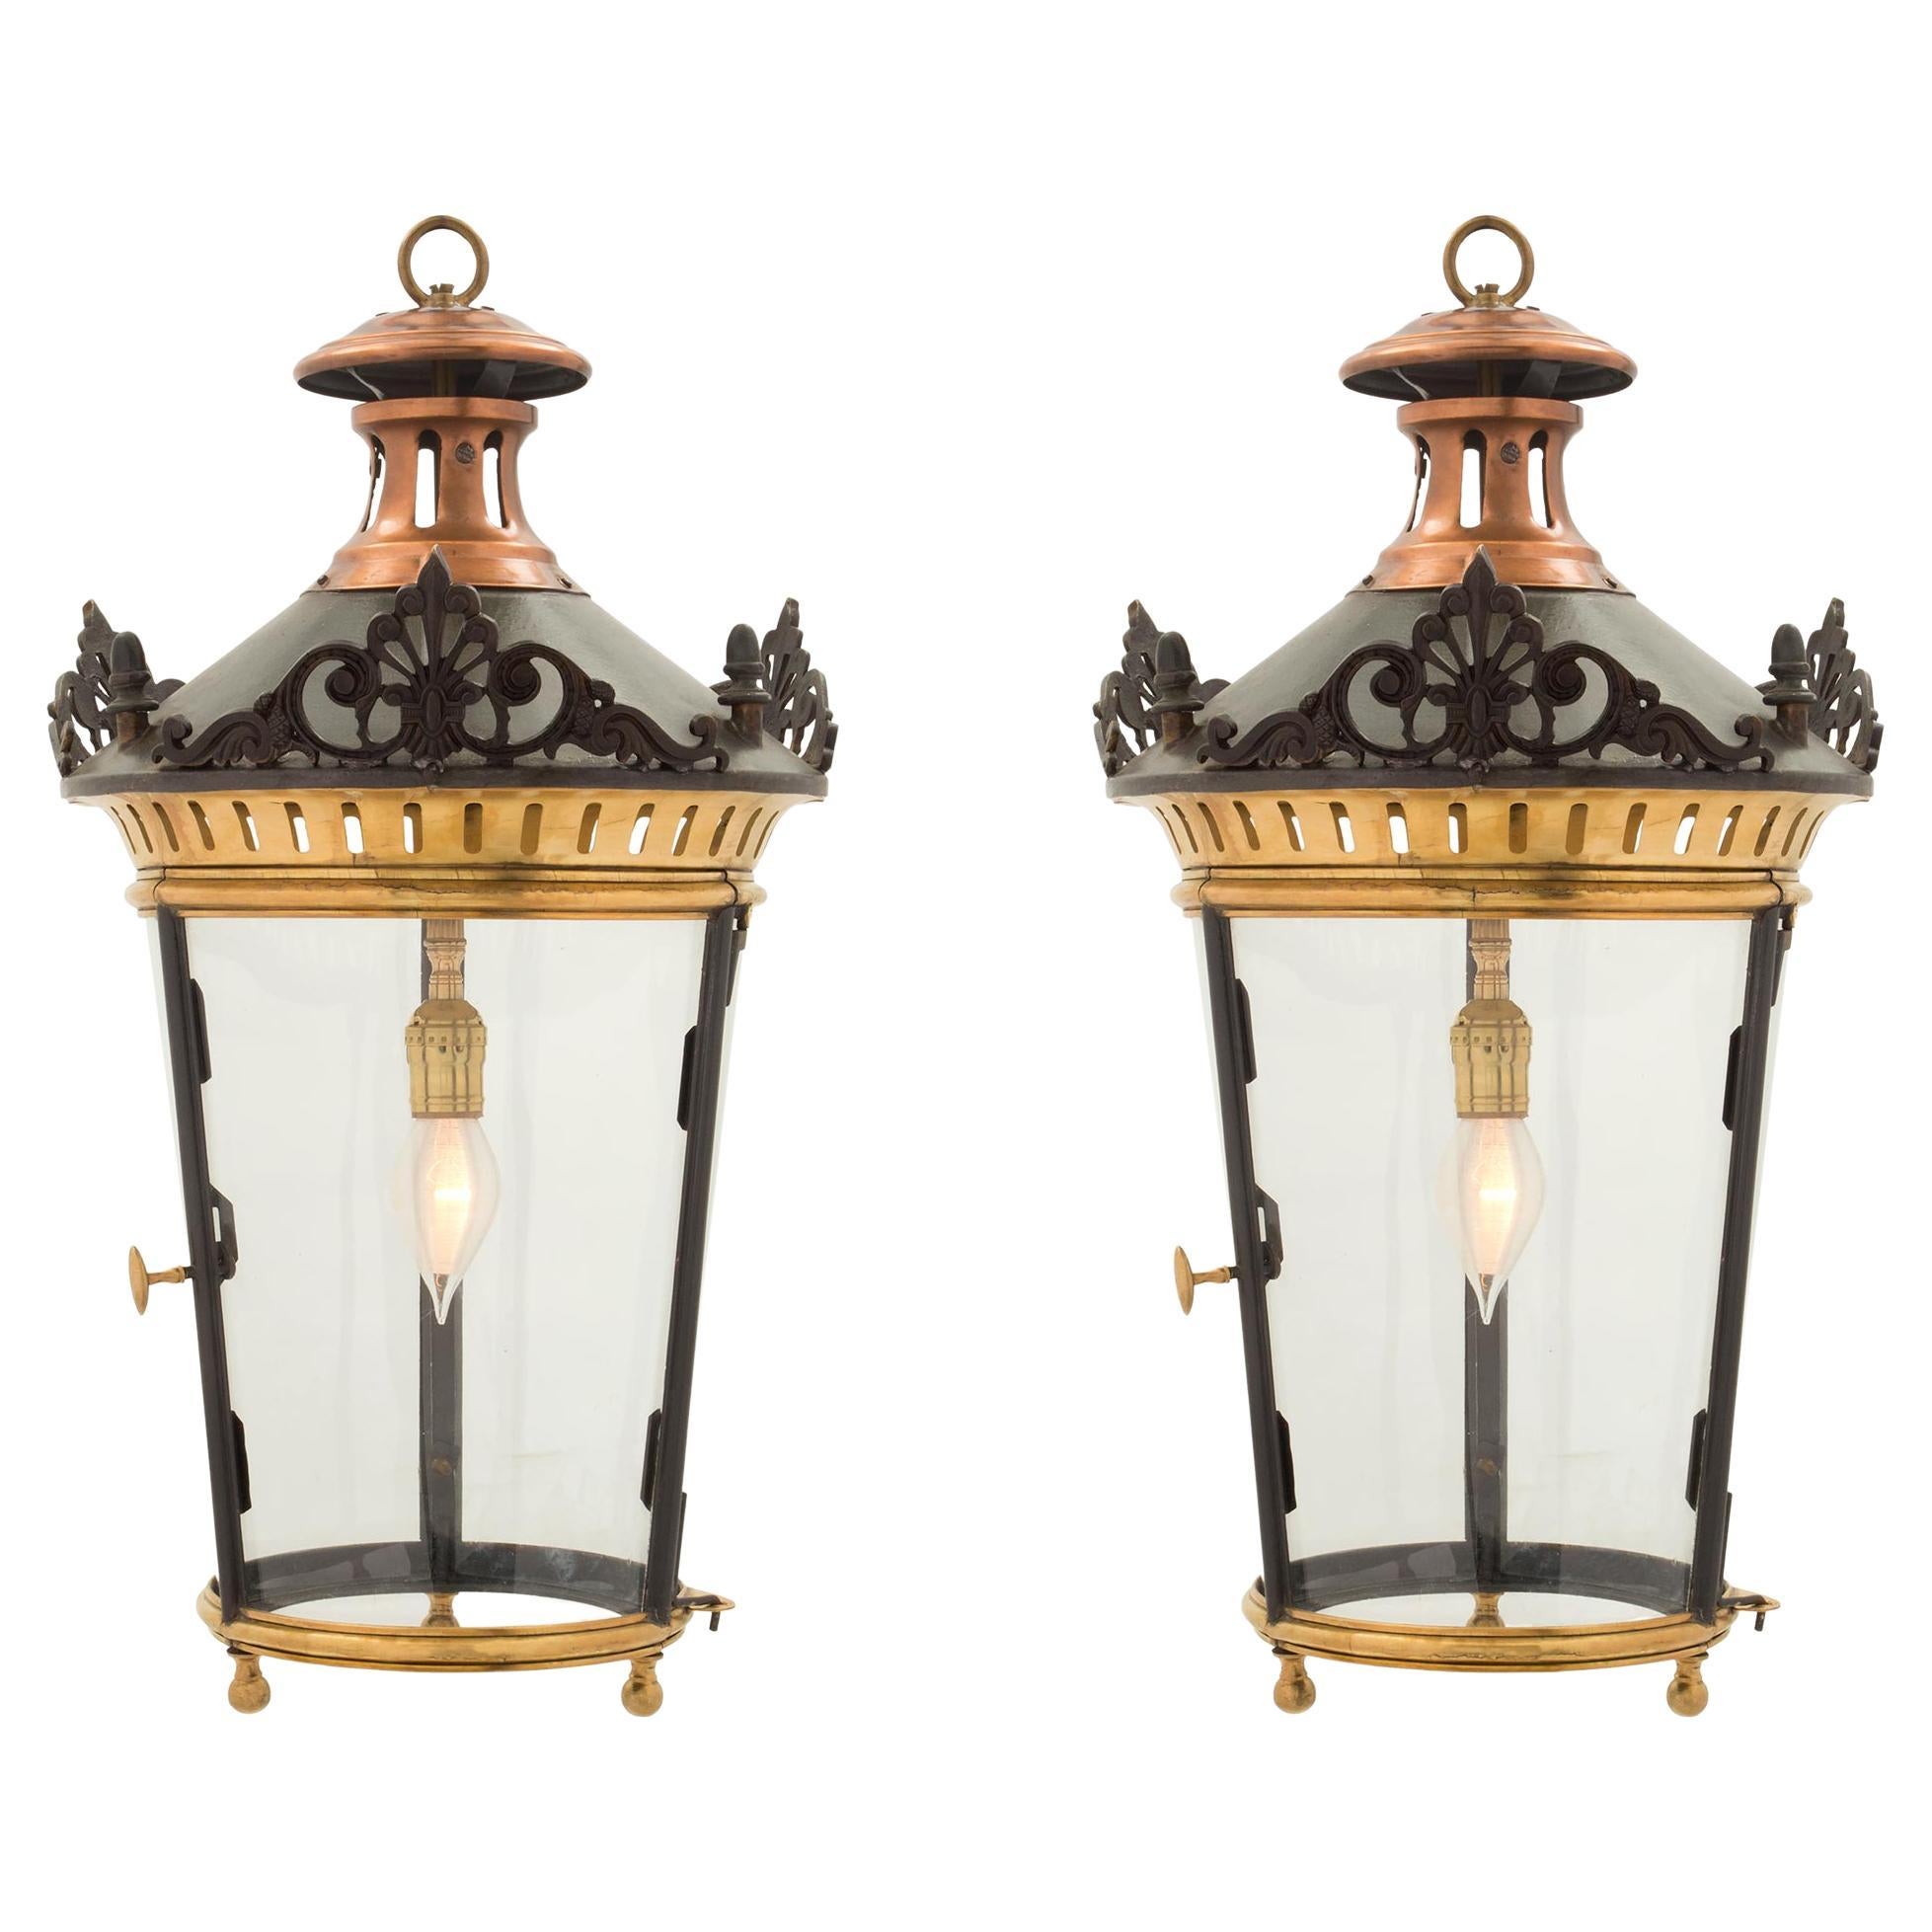 Paire de lanternes françaises de style Louis XVI du 19ème siècle en bronze, bronze doré et cuivre